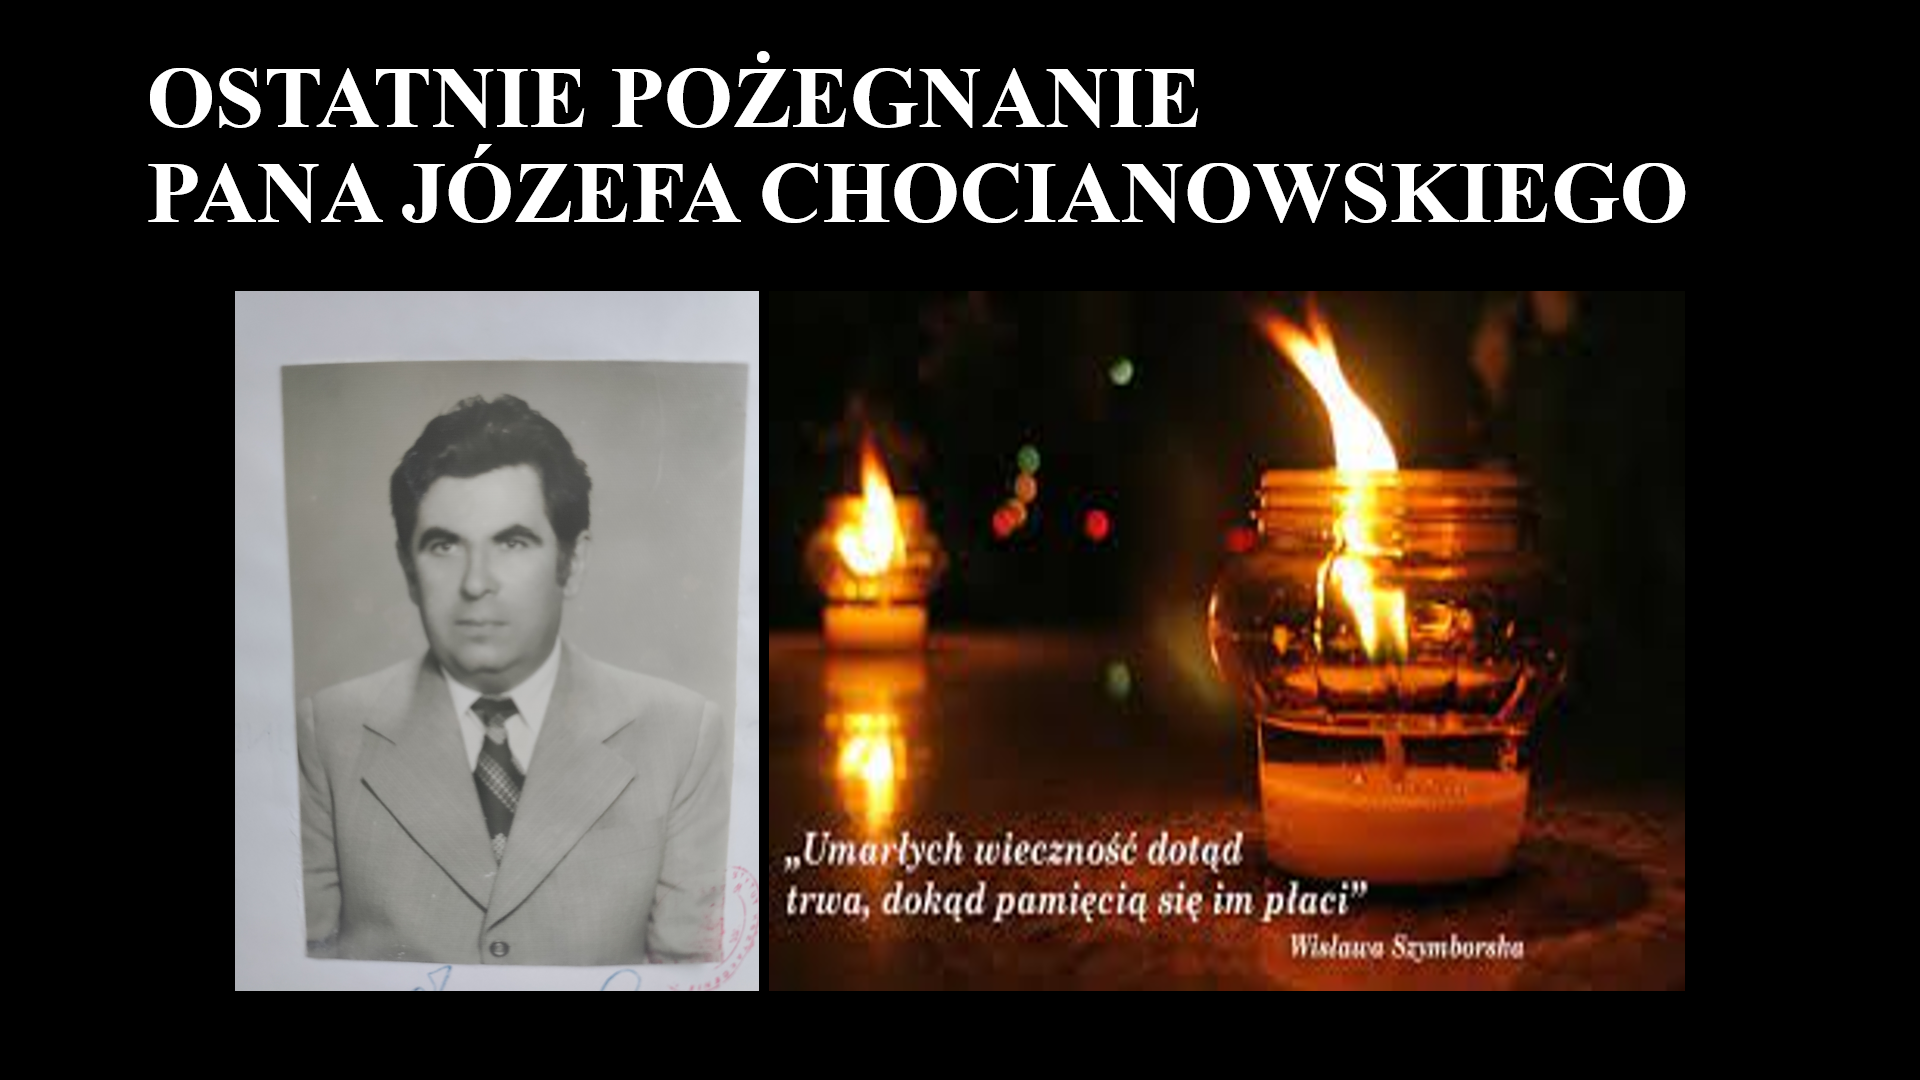 Zdęcie napisem ostatnie pożegnanie- informacja o pogrzebie wieloletniego nauczyciela szkoły w Gaworzycach pana Józefa Chocianowskiego.